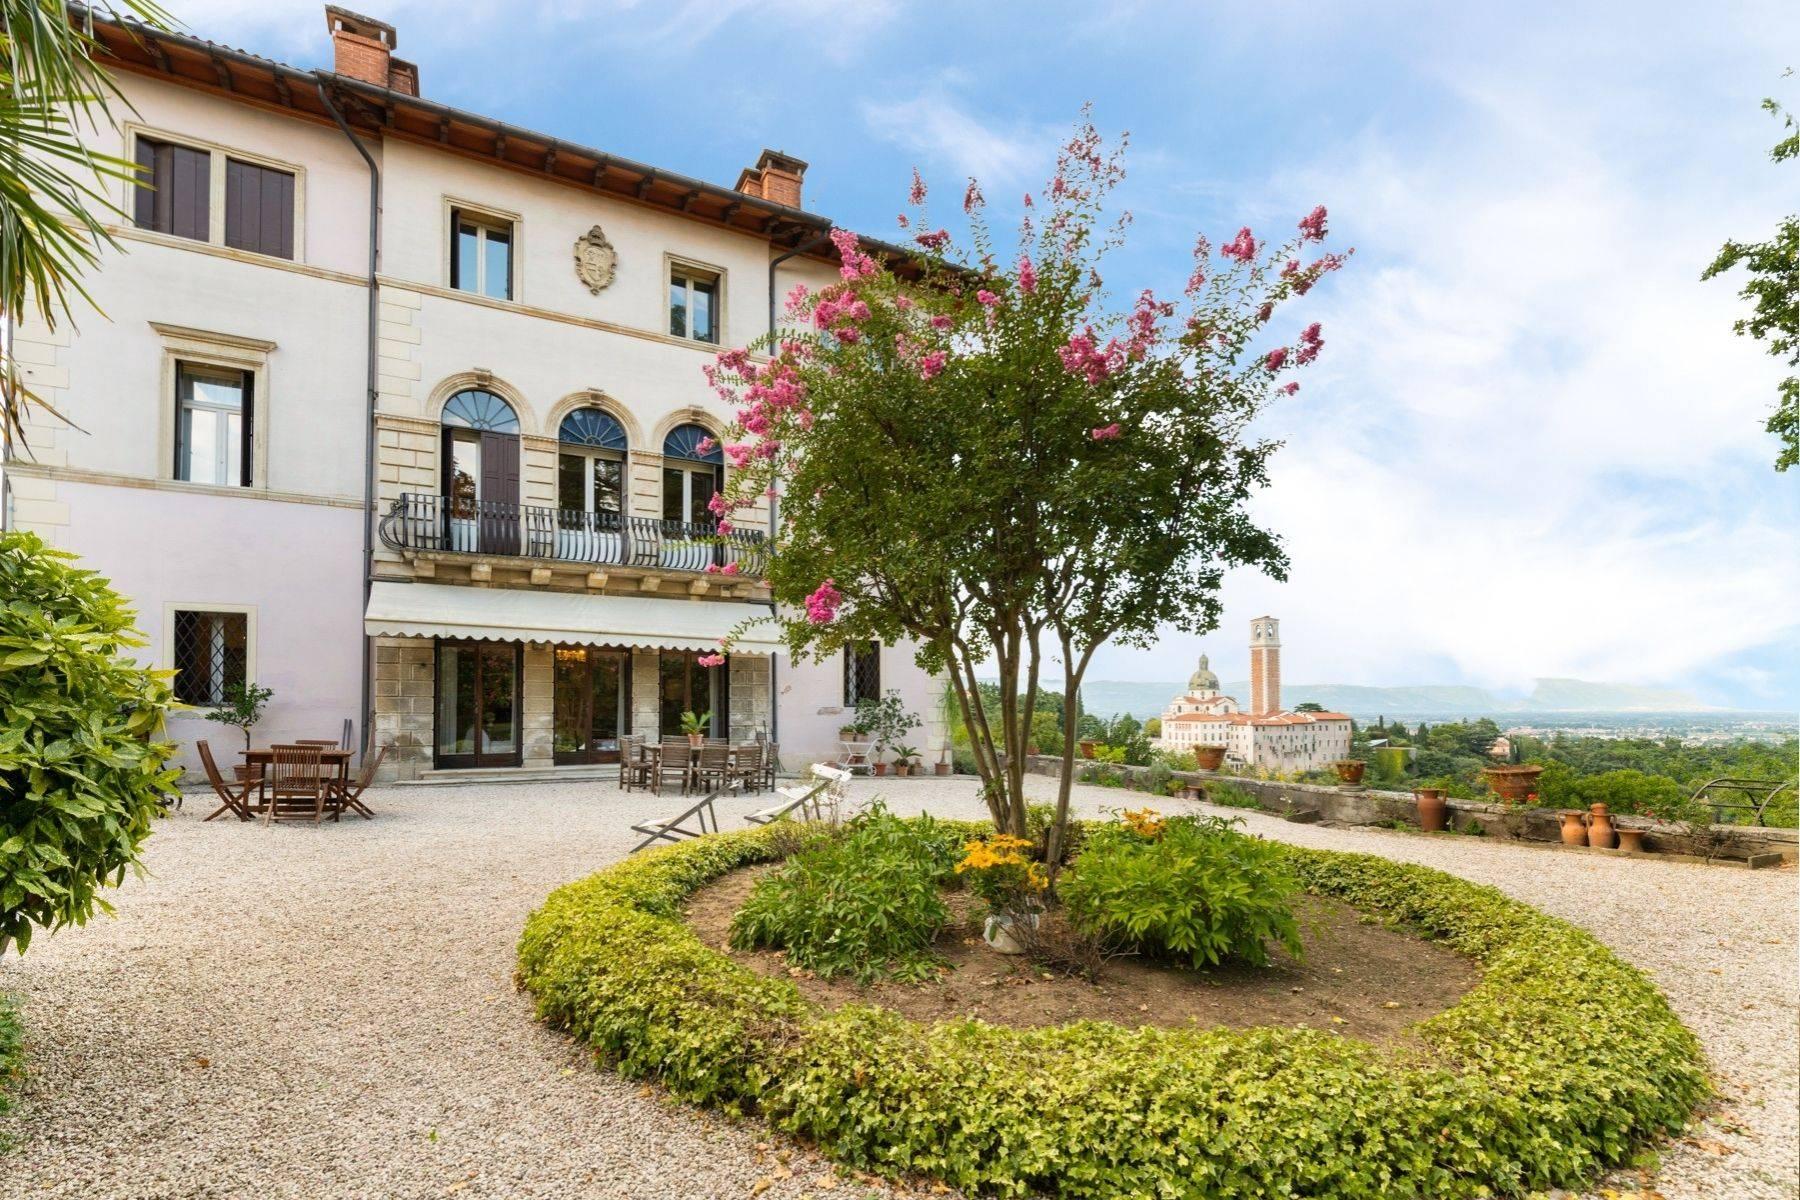 Elegante historische Villa mit privatem Park auf dem Monte Berico - 2